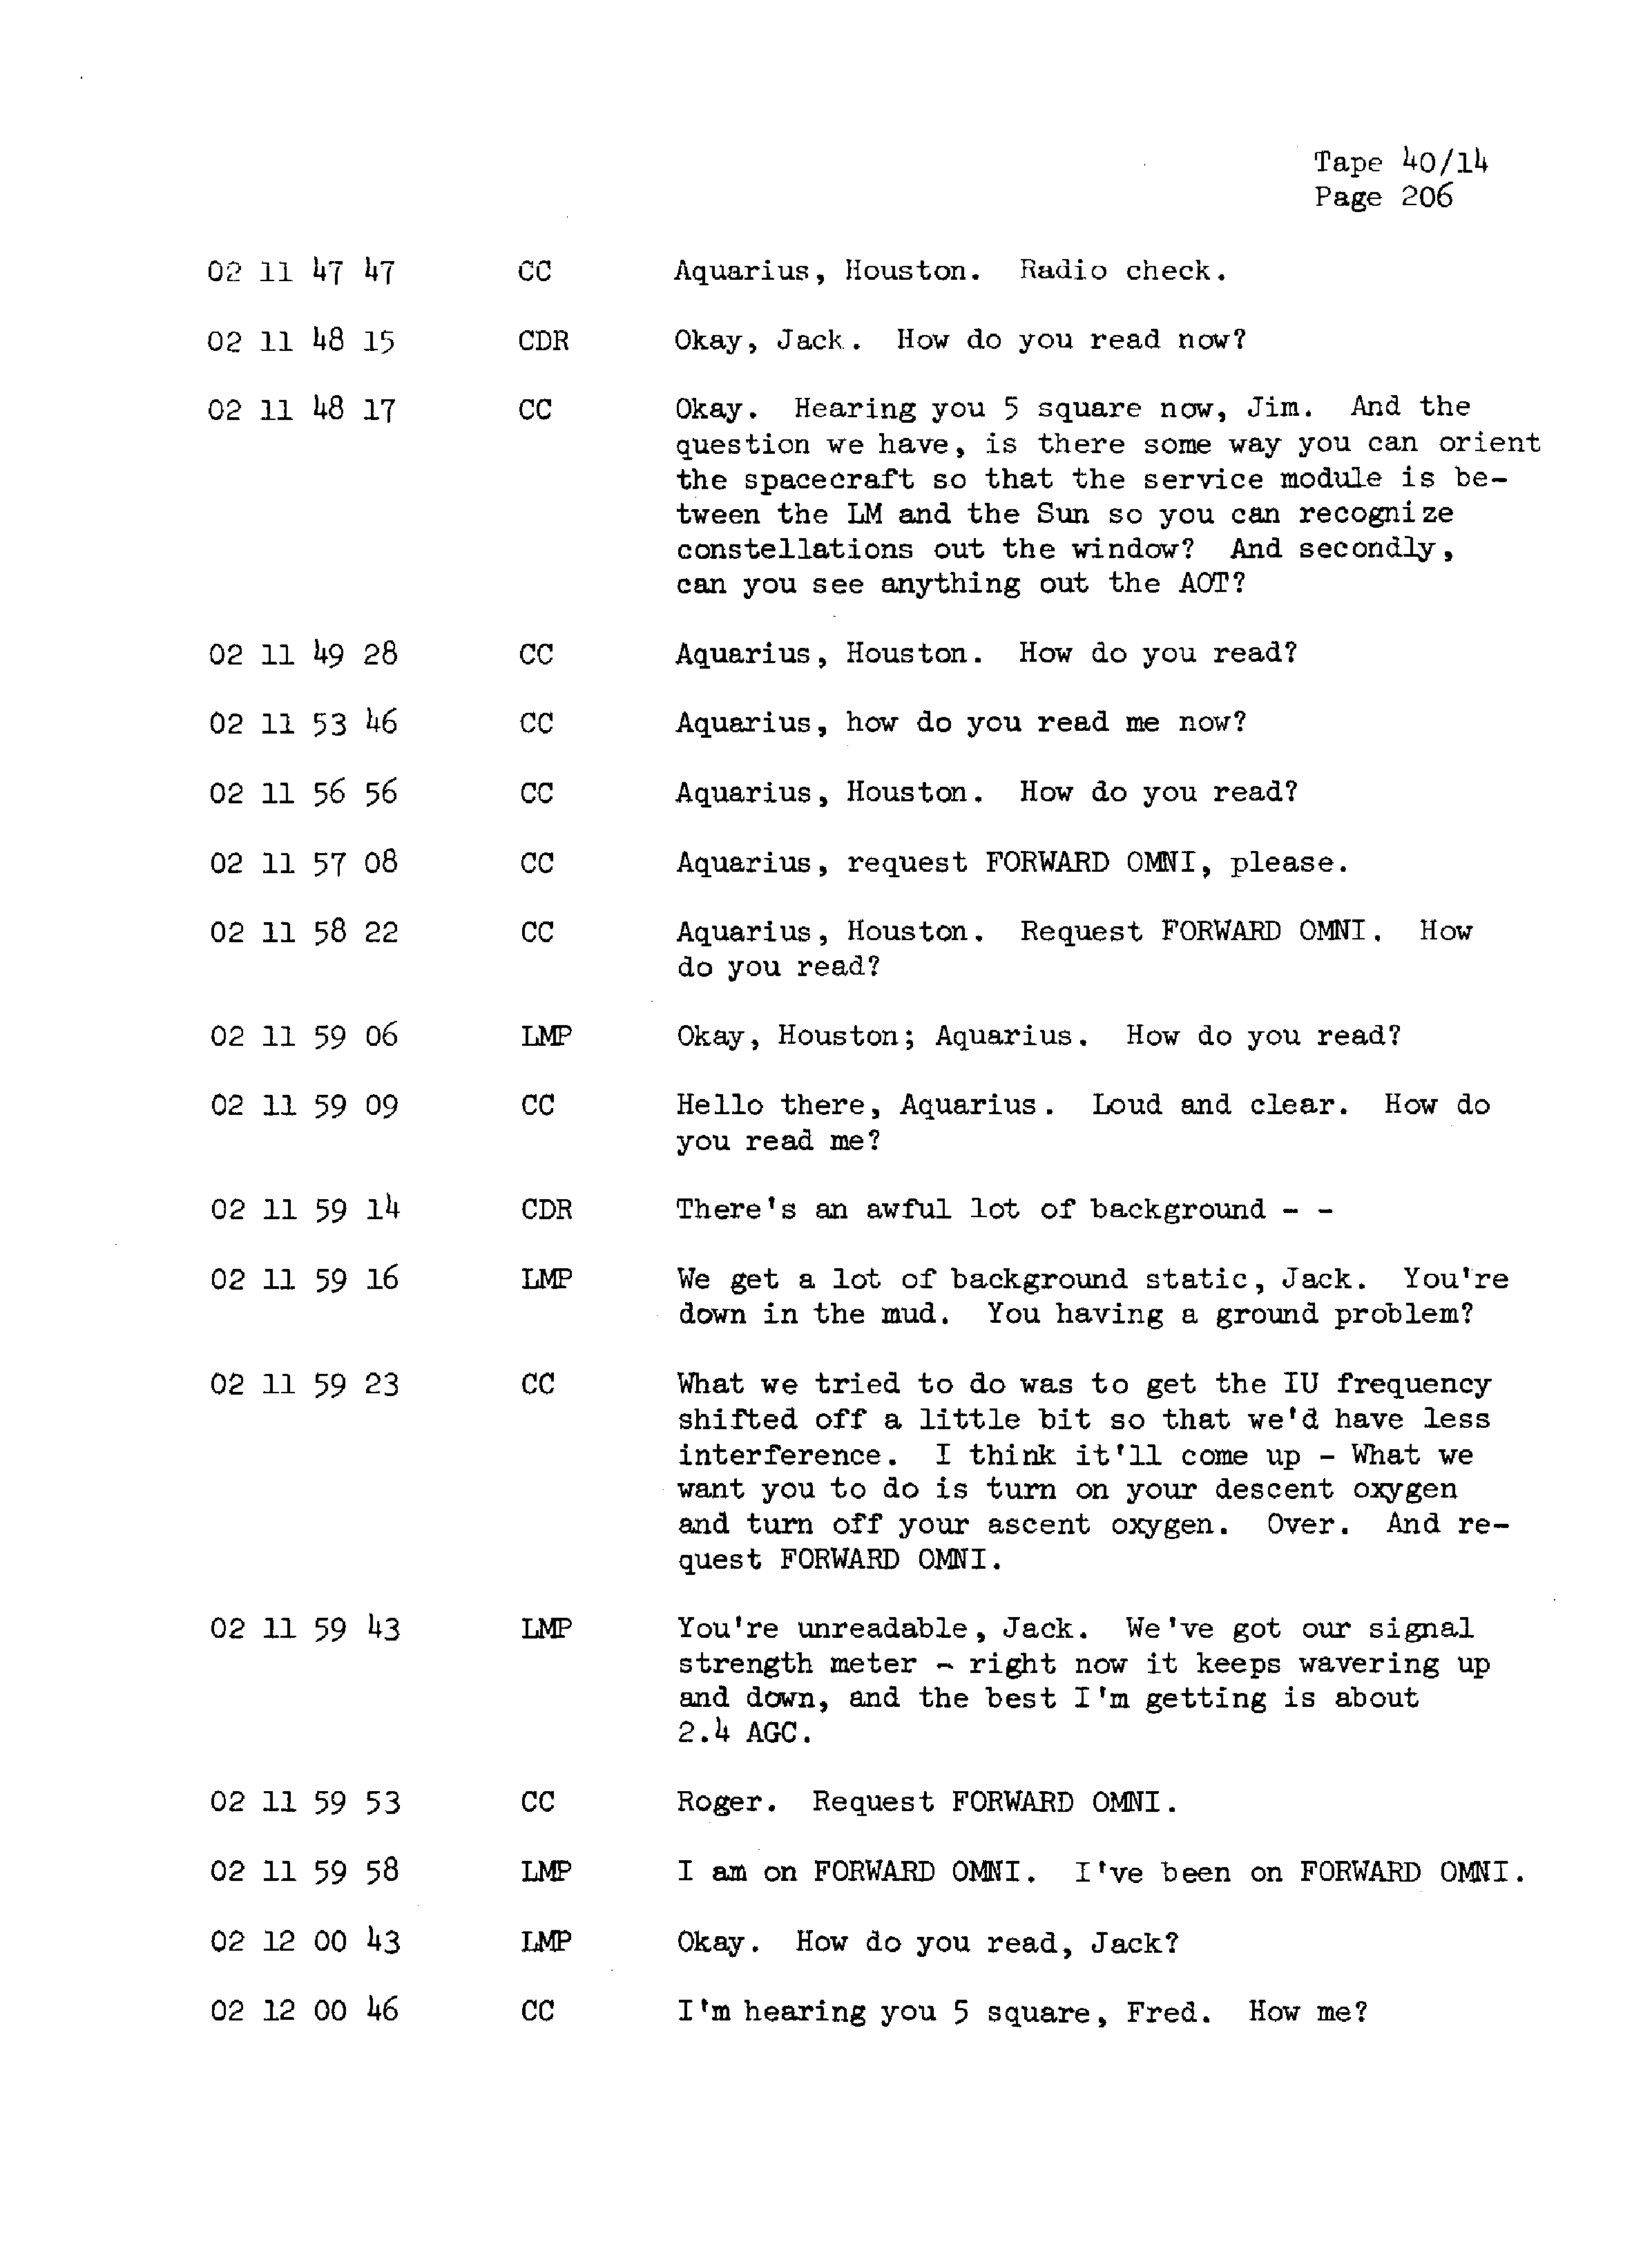 Page 213 of Apollo 13’s original transcript